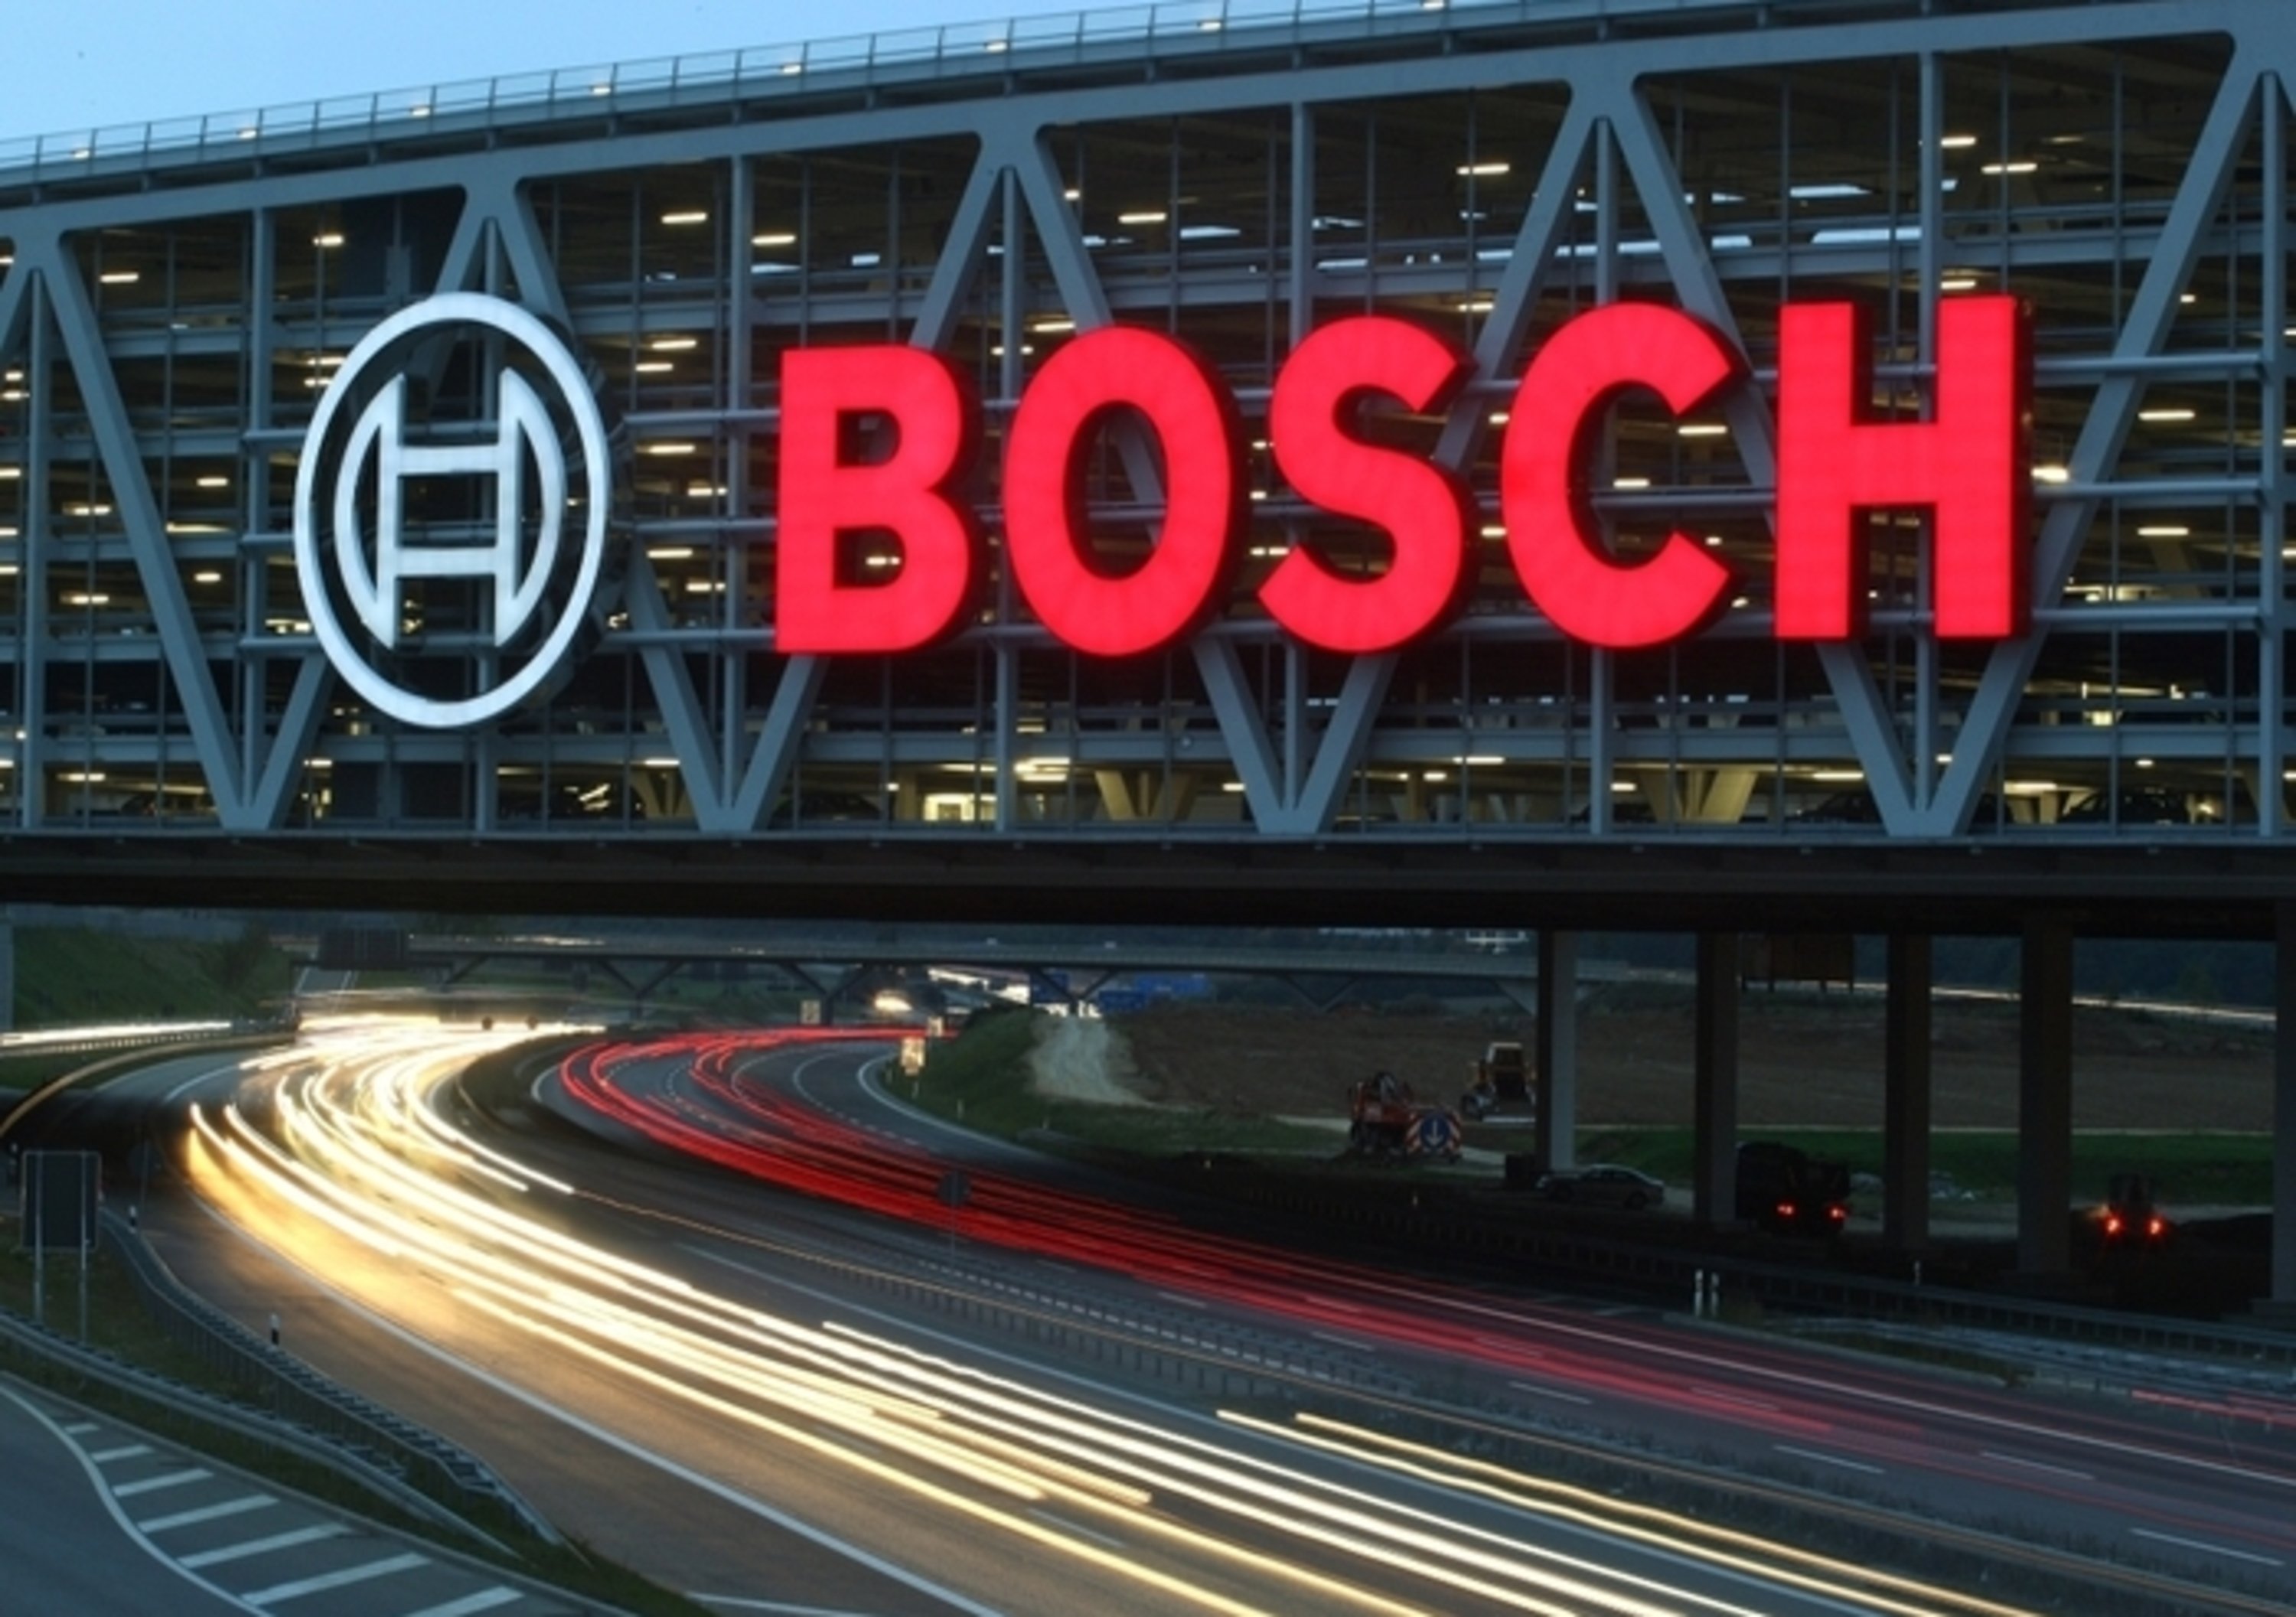 Bosch, pm analizzano dati rubati per dimostrare coinvolgimento nel Dieselgate